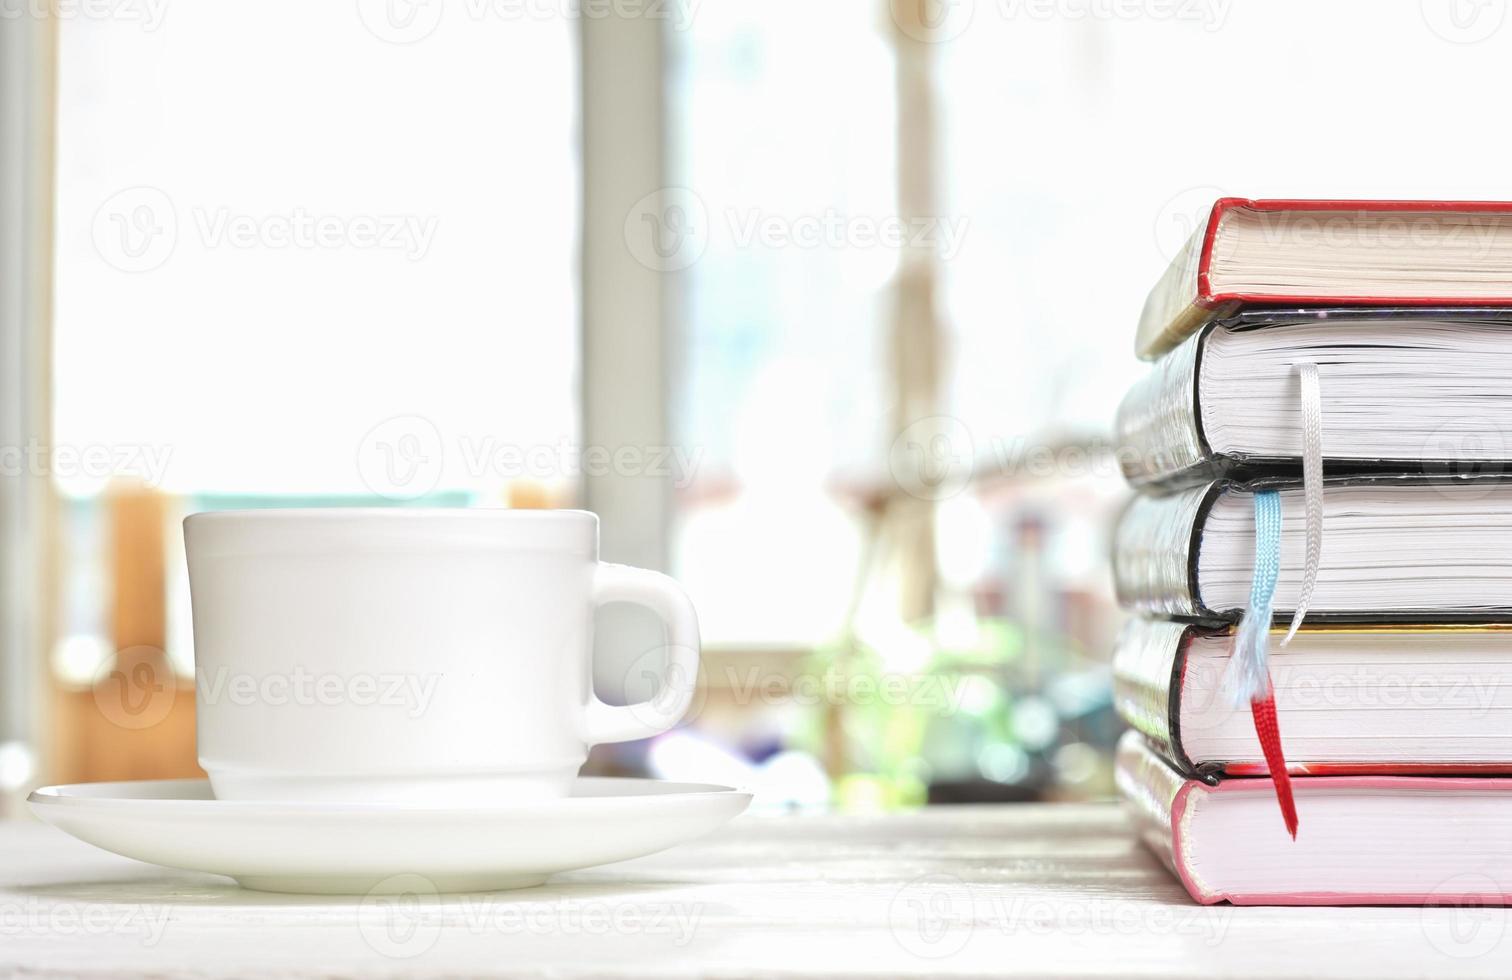 classica tazza di caffè bianca su un tavolo bianco sulla terrazza e una pila di libri con segnalibri. lettura, apprendimento e studio, ore mattutine per l'autoeducazione foto